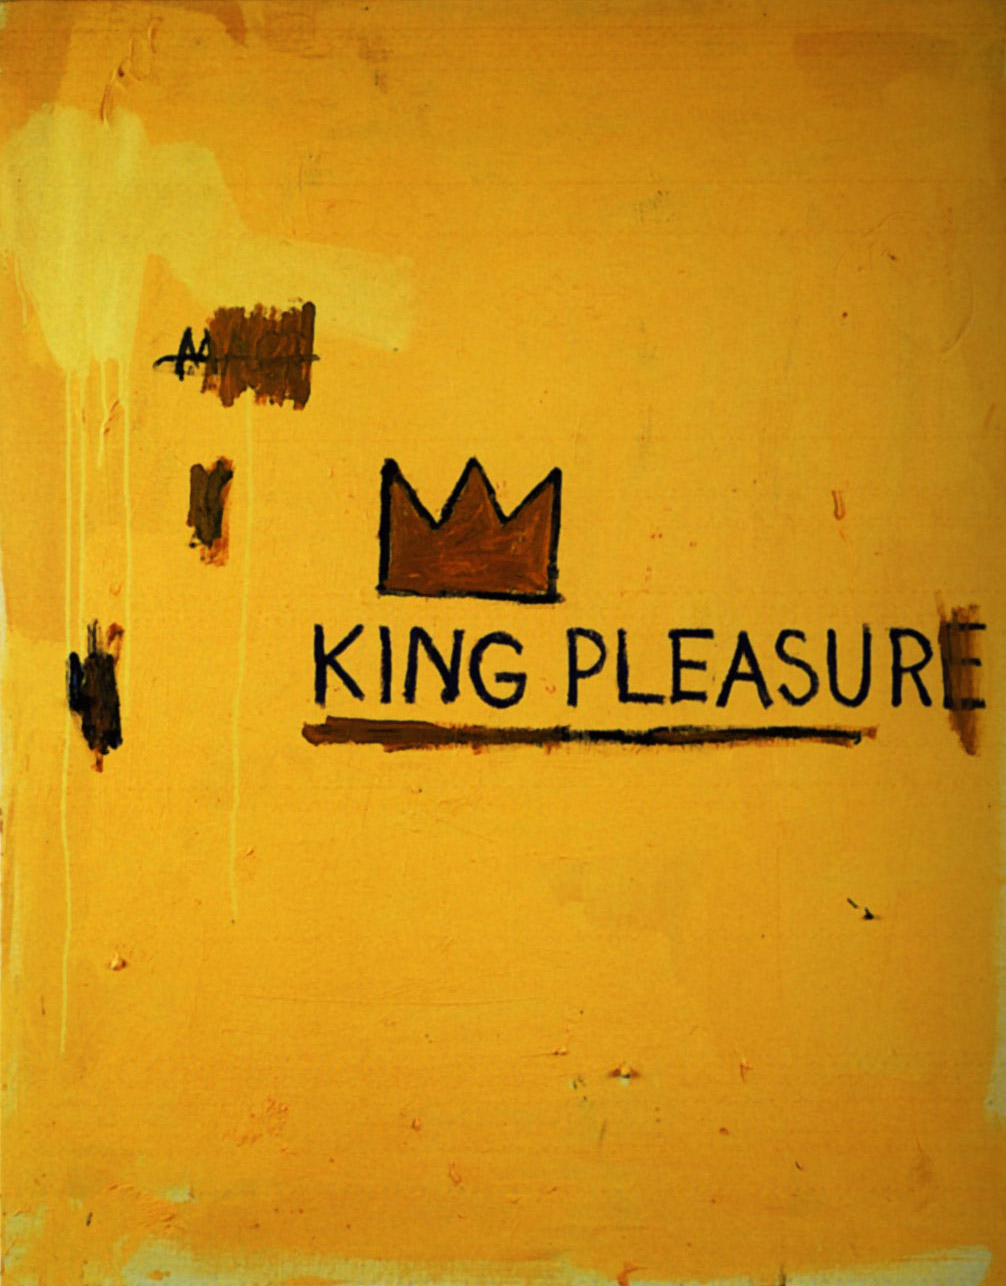 King Pleasure, 1987 - Jean-Michel Basquiat - WikiArt.org